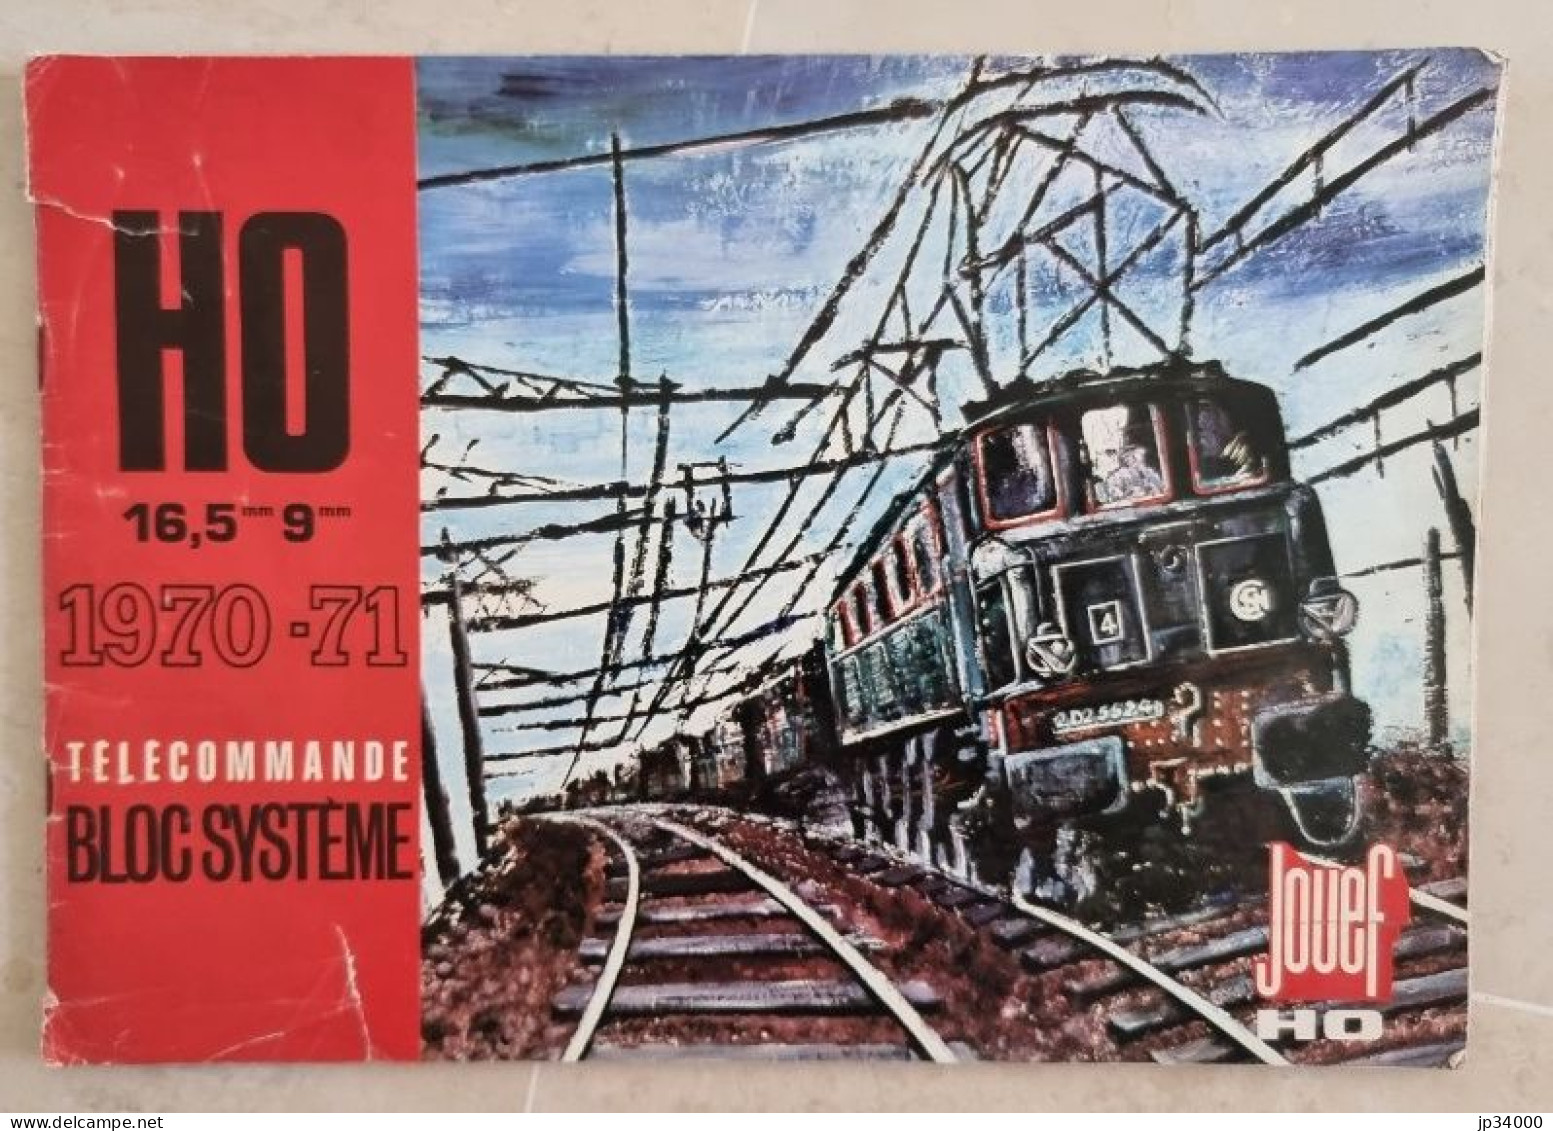 TELECOMMANDE BLOC SYSTEME (Jouef HO) Complet 40 Pages, 1970-71 (Trains électriques) - Literatura & DVD